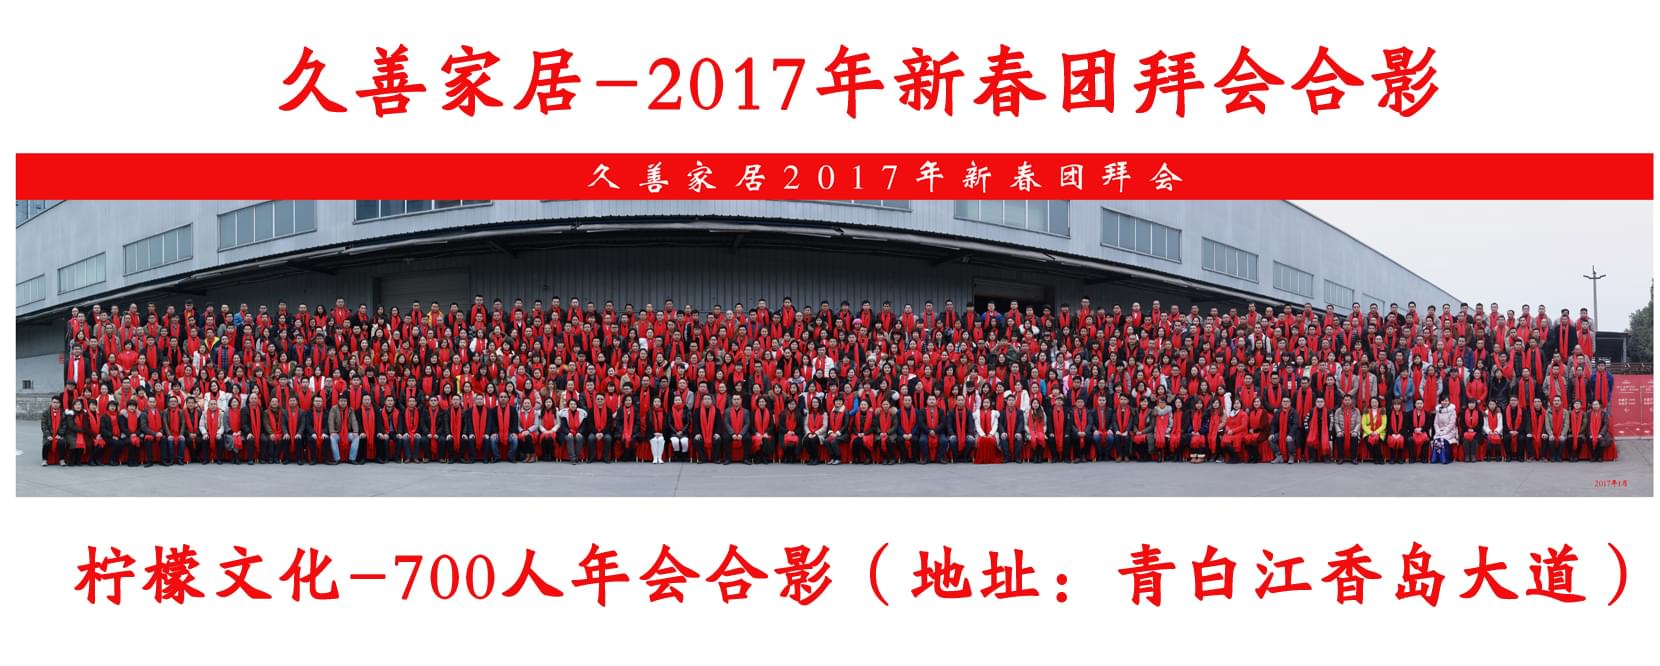 久善家居2017年新春团拜会700人集体照拍摄